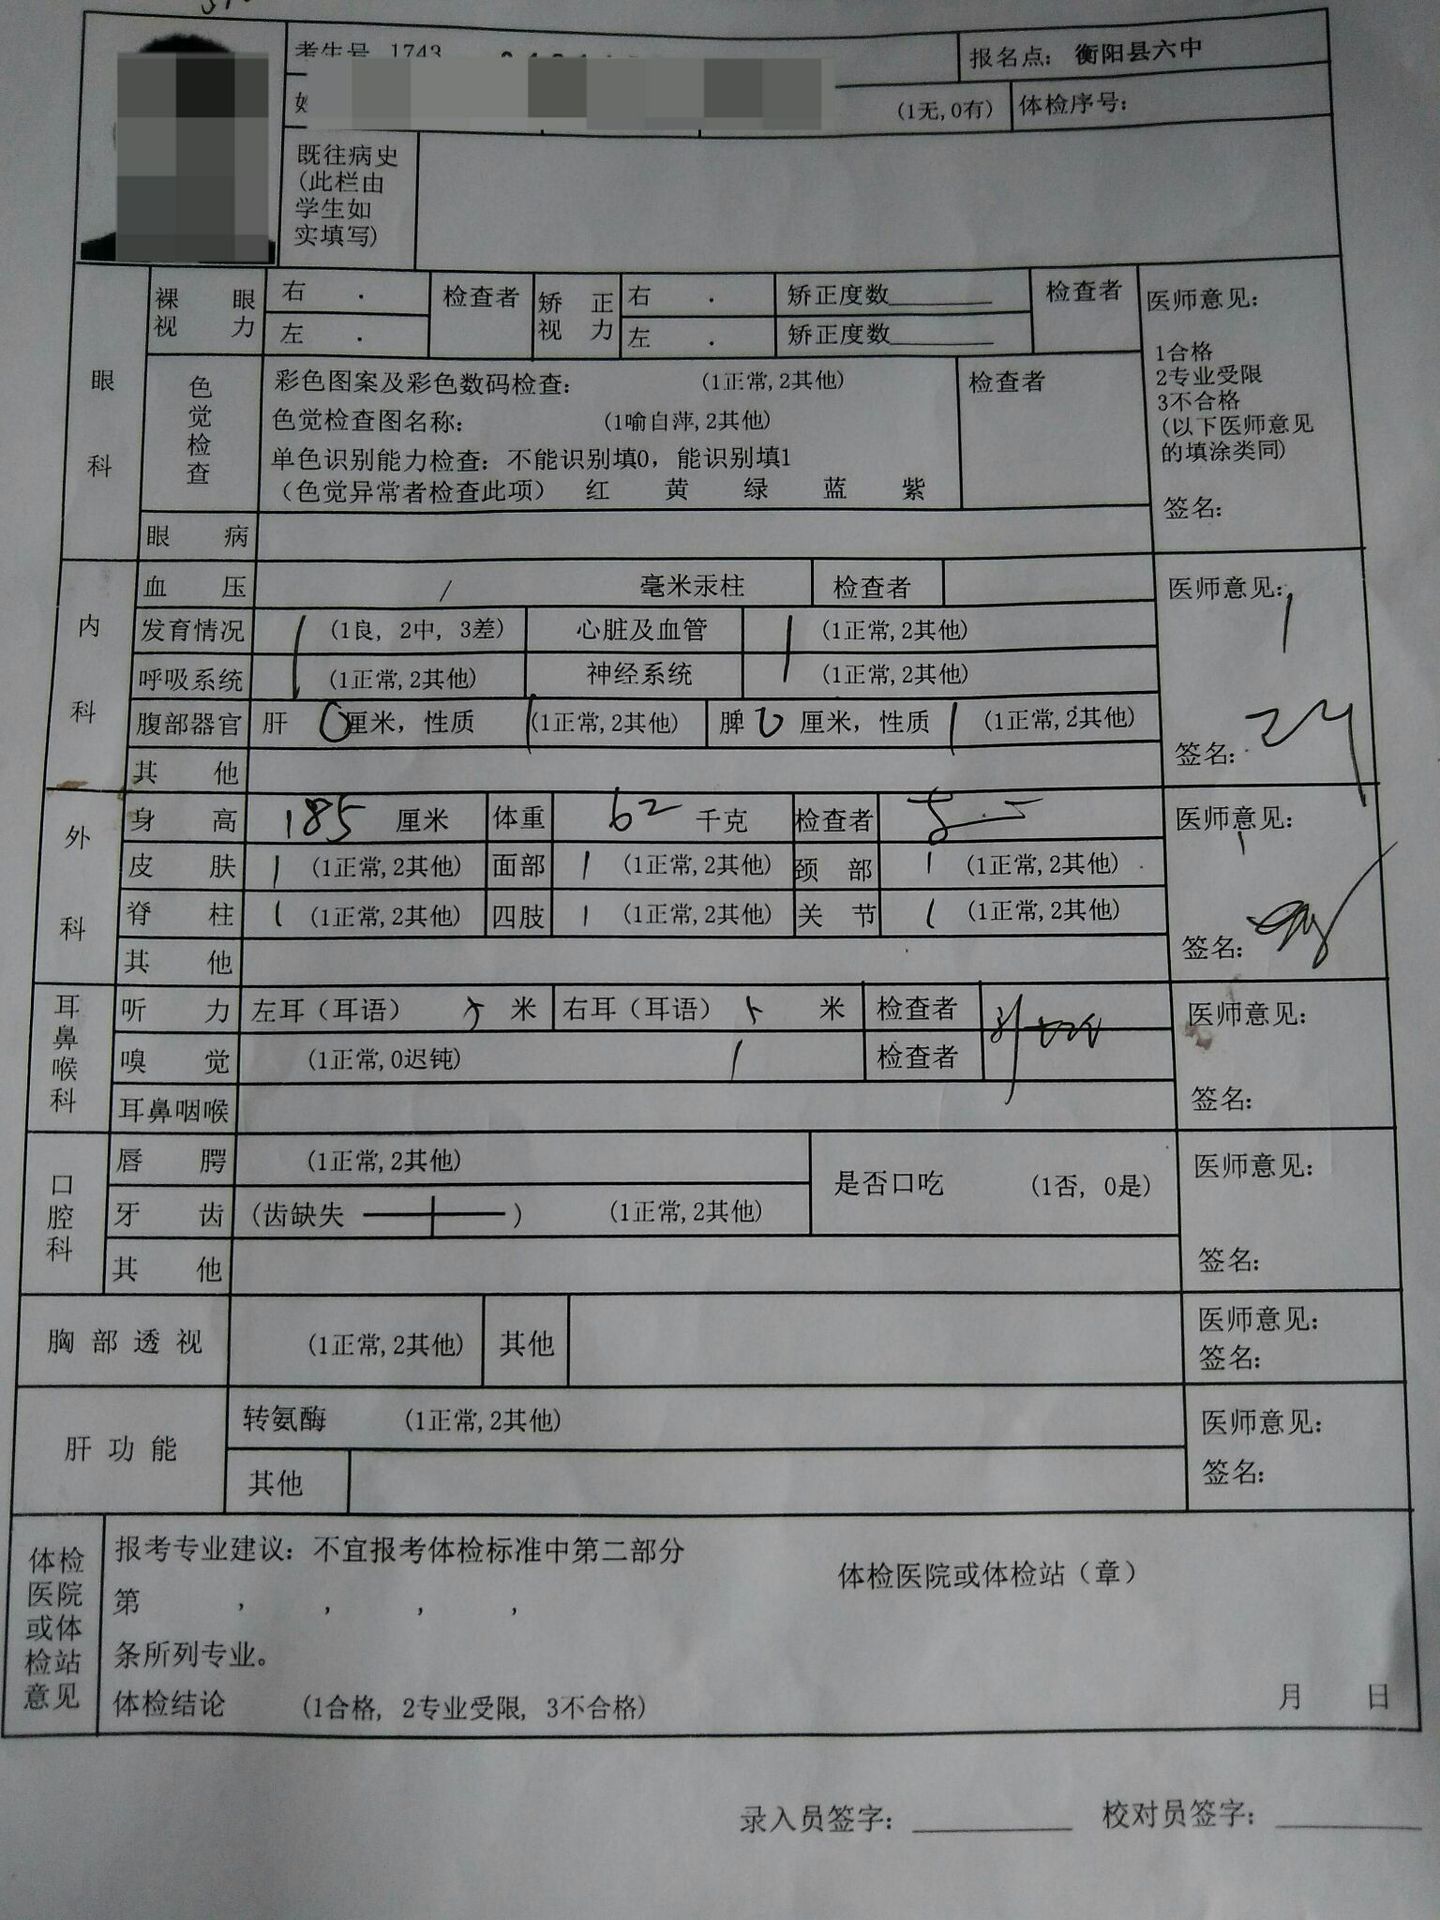 2021北京高考体检表下载